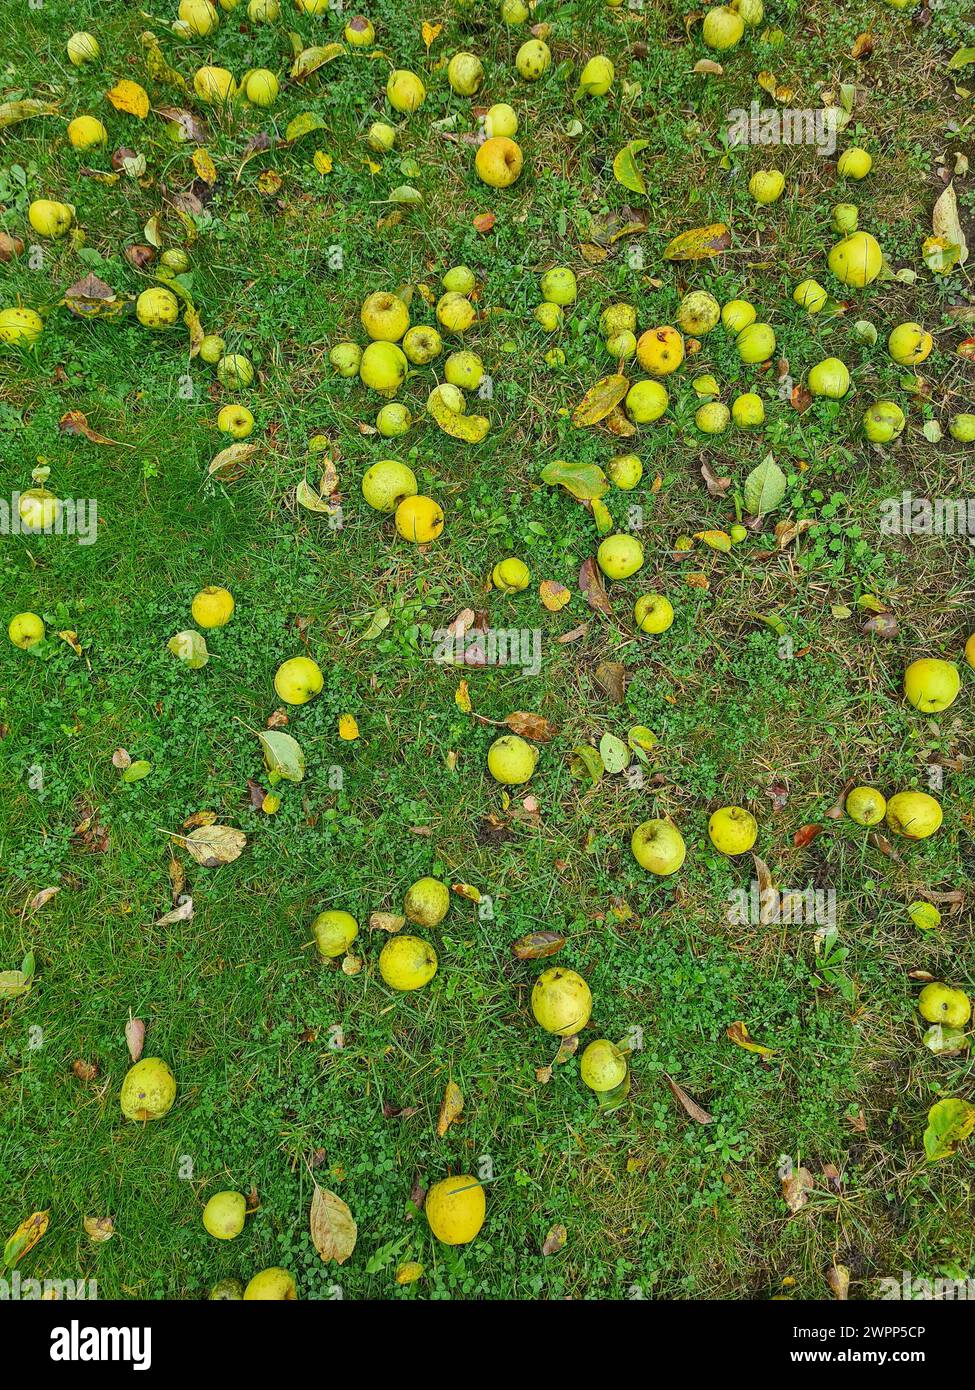 Grüne und gelbe Äpfel liegen auf einem grünen Rasen, Gartenarbeit, Apfelernte, Herbstzeit, Erntezeit, Deutschland Stockfoto